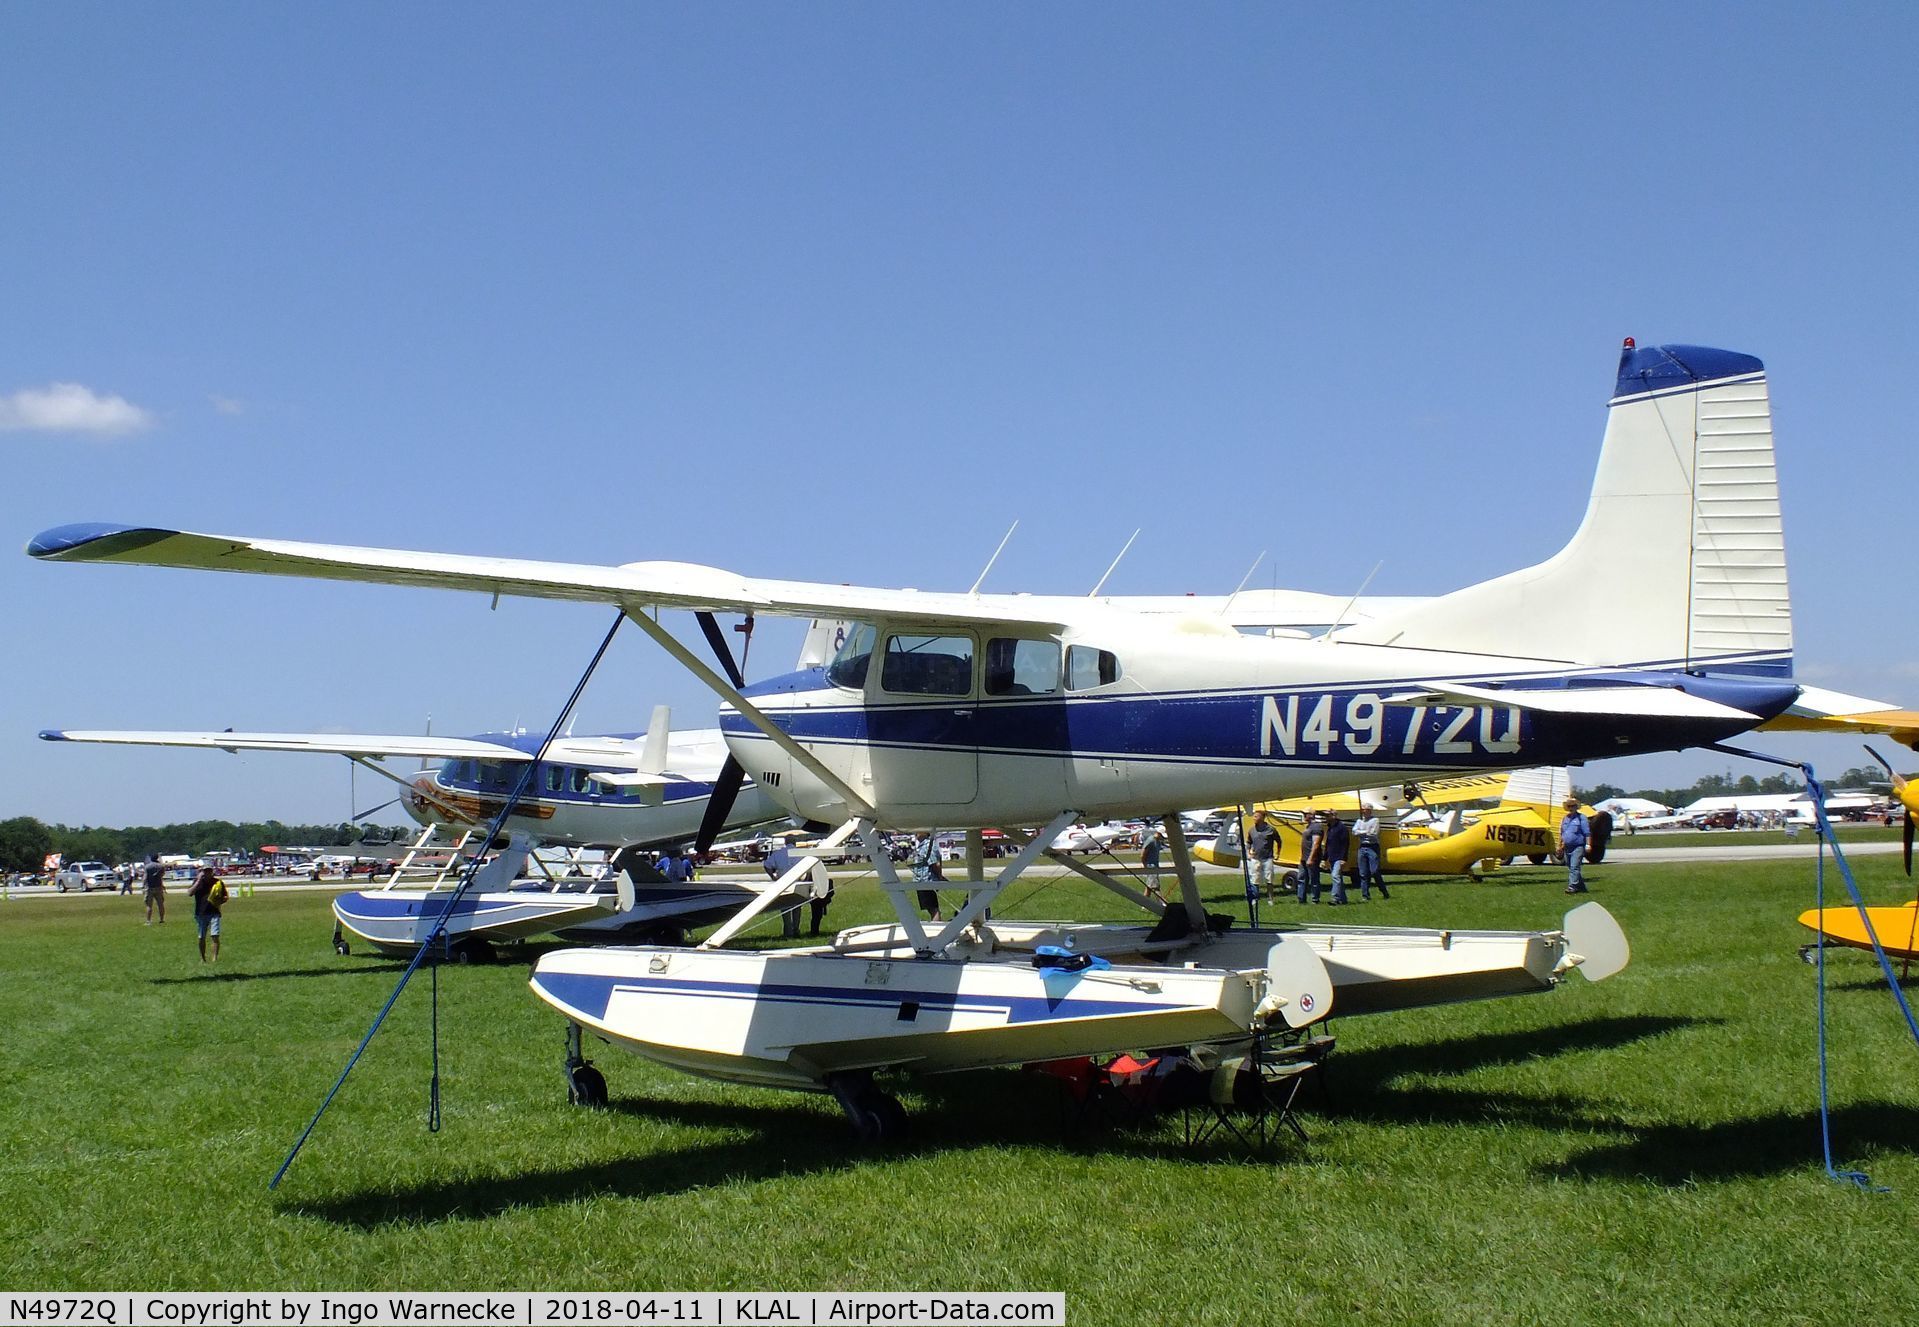 N4972Q, 1978 Cessna A185F Skywagon 185 C/N 18503591, Cessna A185F Skywagon on amphibious floats at 2018 Sun 'n Fun, Lakeland FL